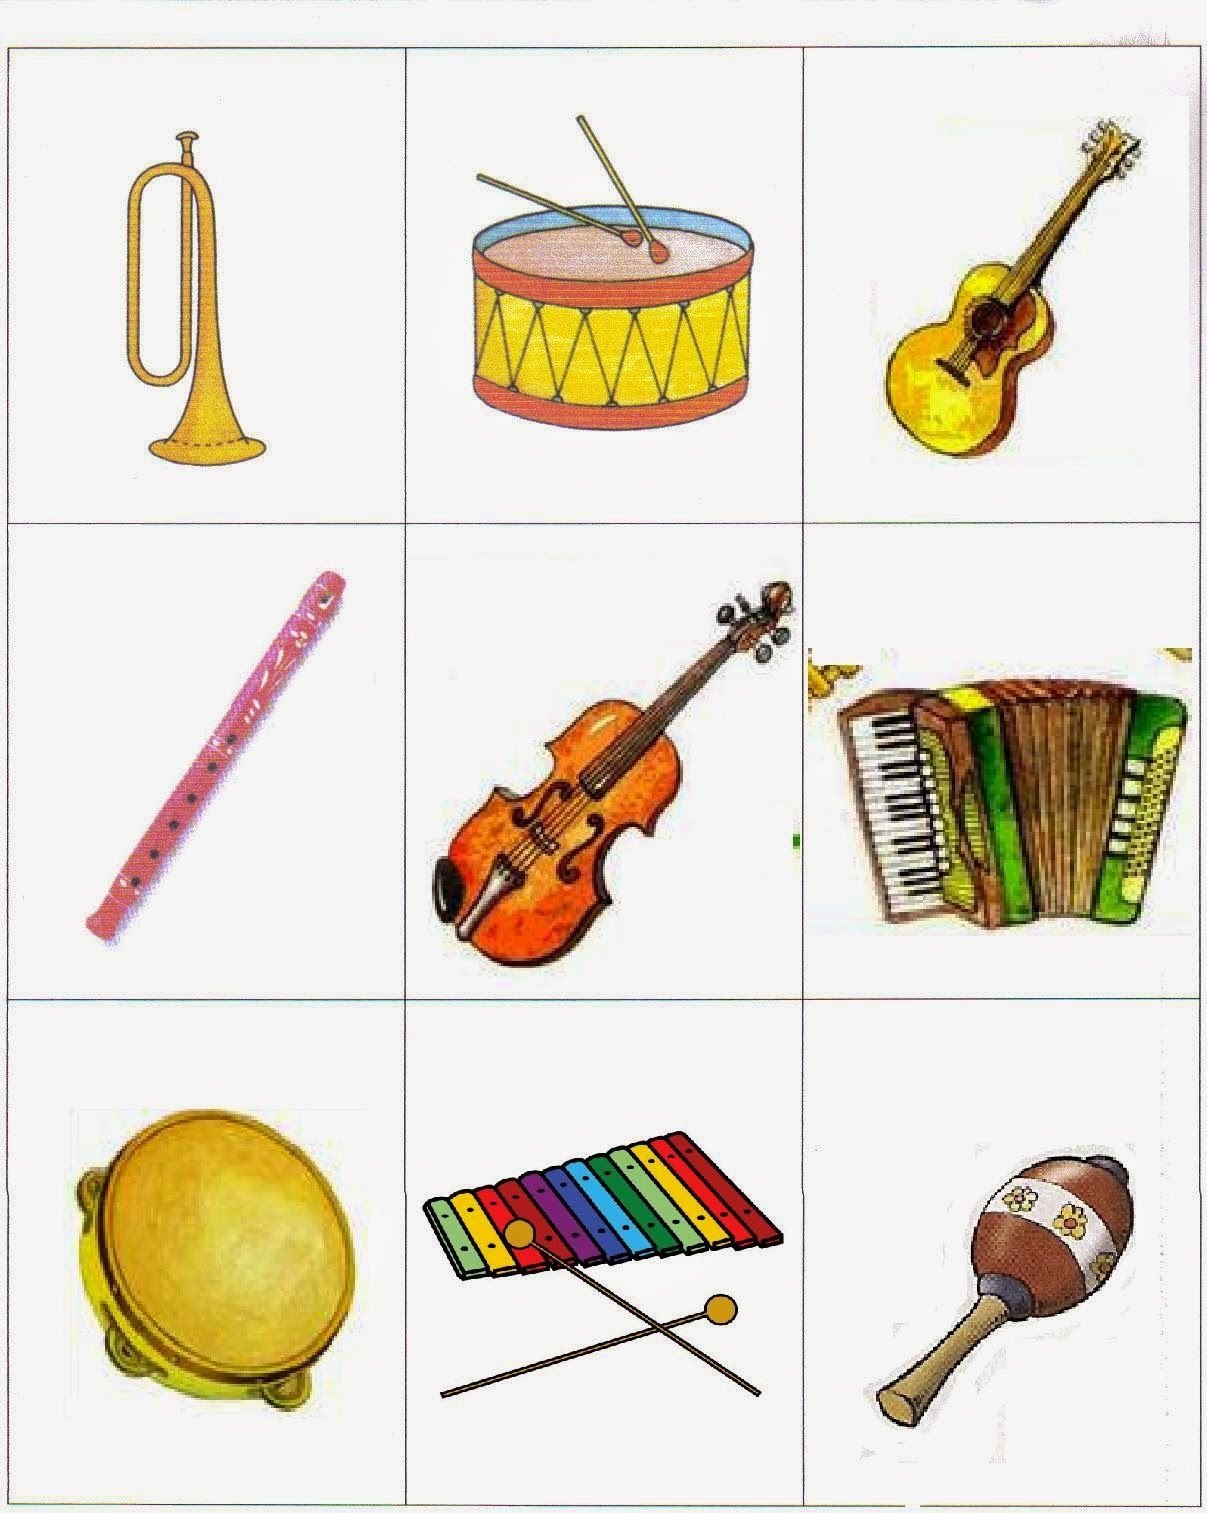 Учим музыкальные инструменты